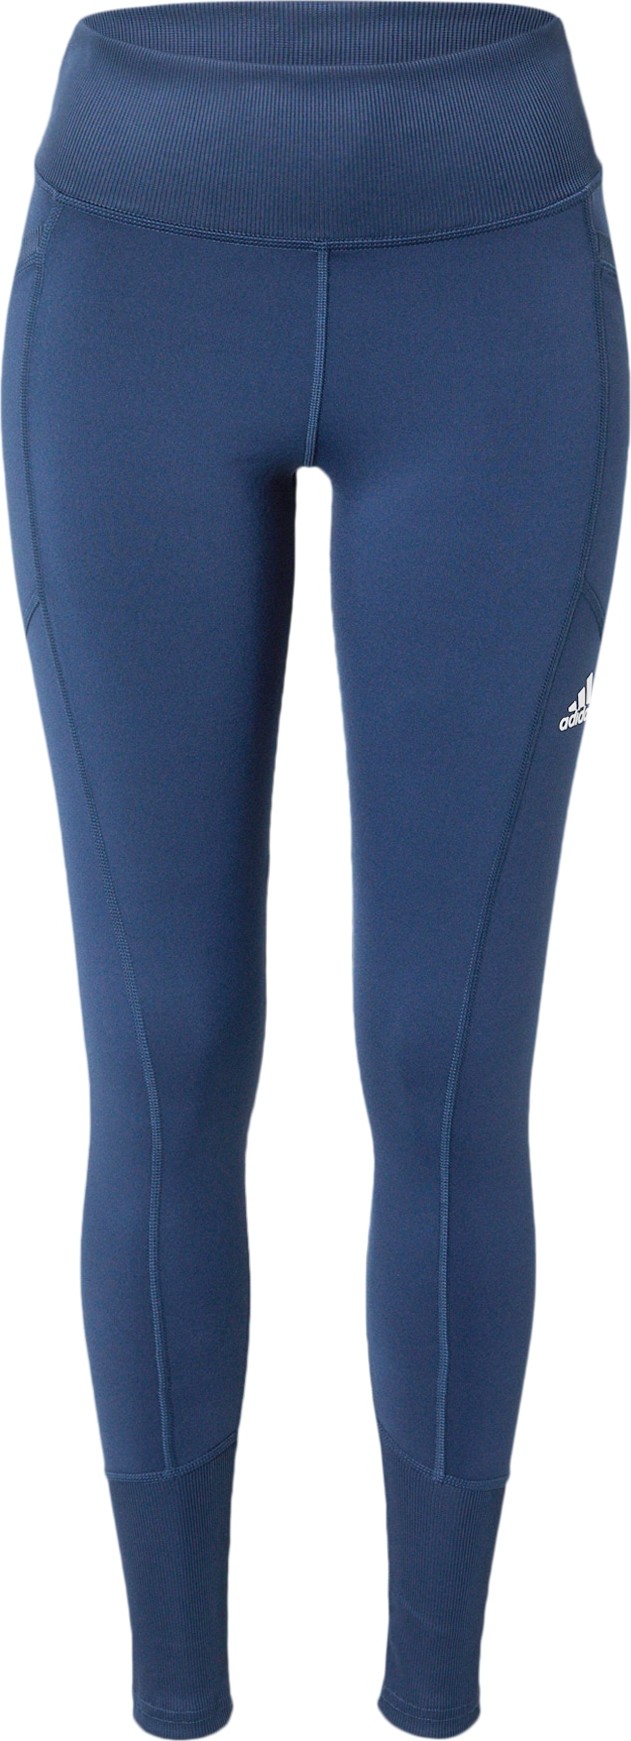 ADIDAS GOLF Sportovní kalhoty tmavě modrá / bílá